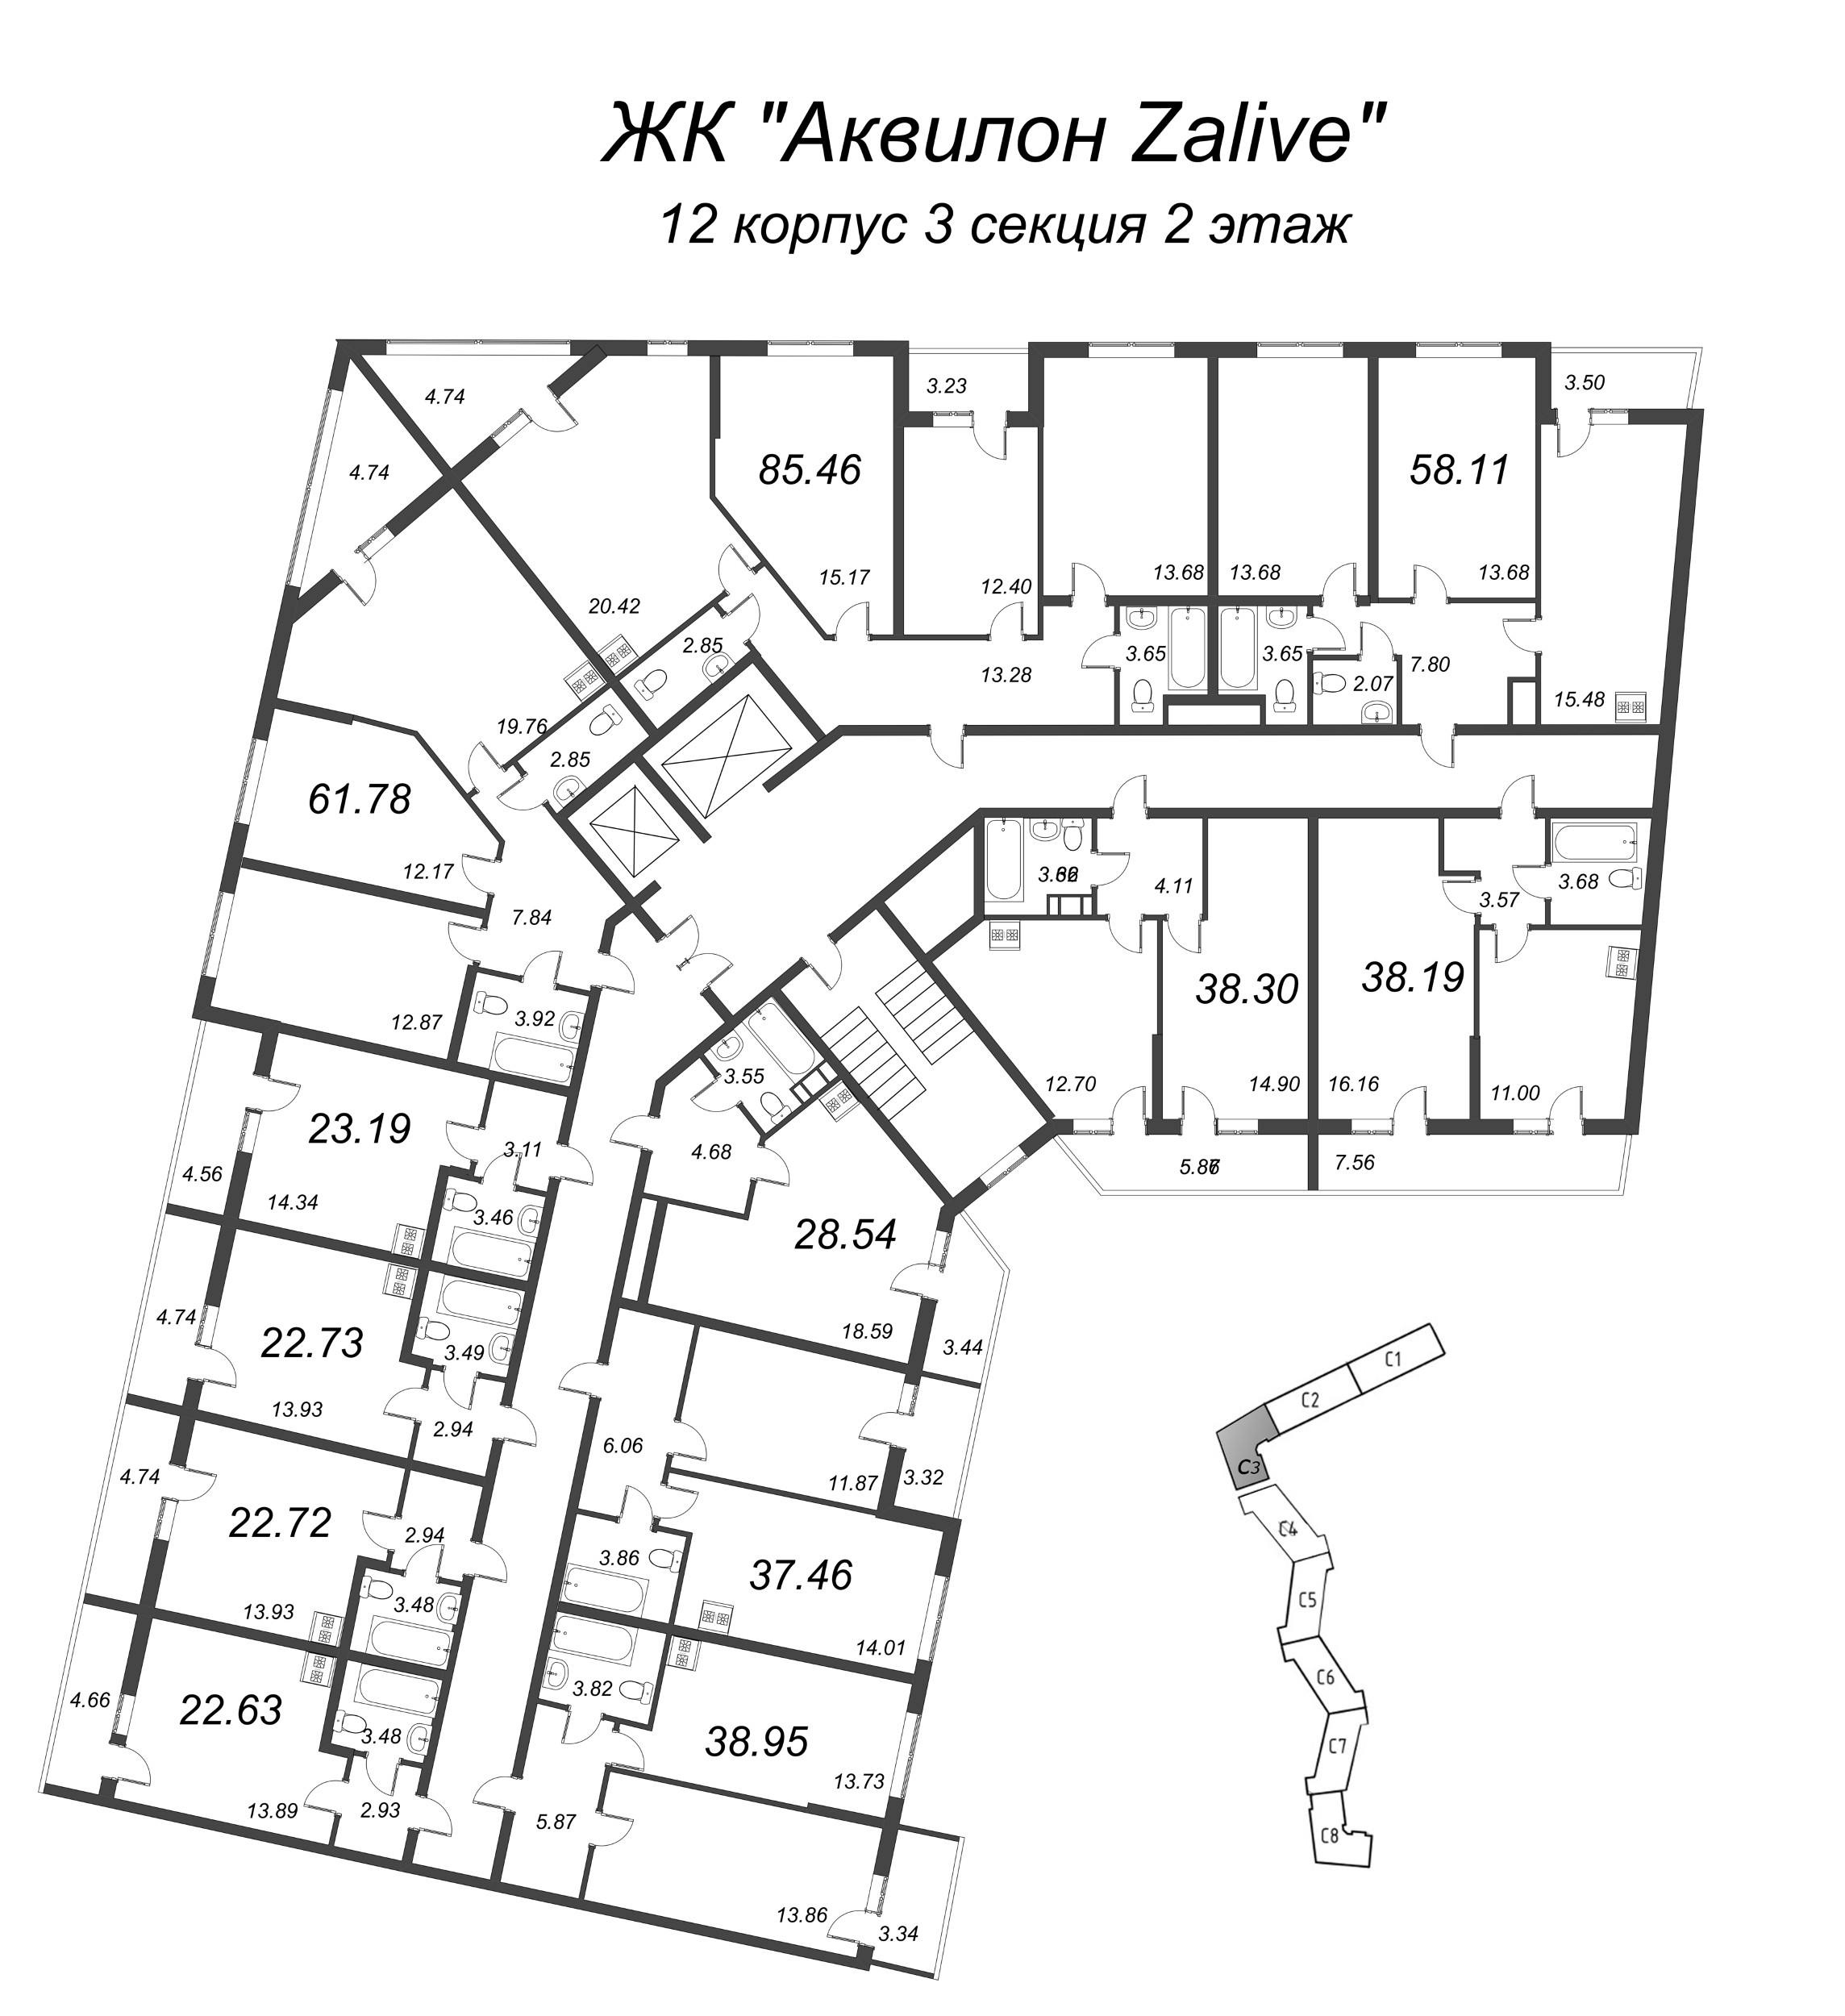 3-комнатная (Евро) квартира, 61.7 м² в ЖК "Аквилон Zalive" - планировка этажа